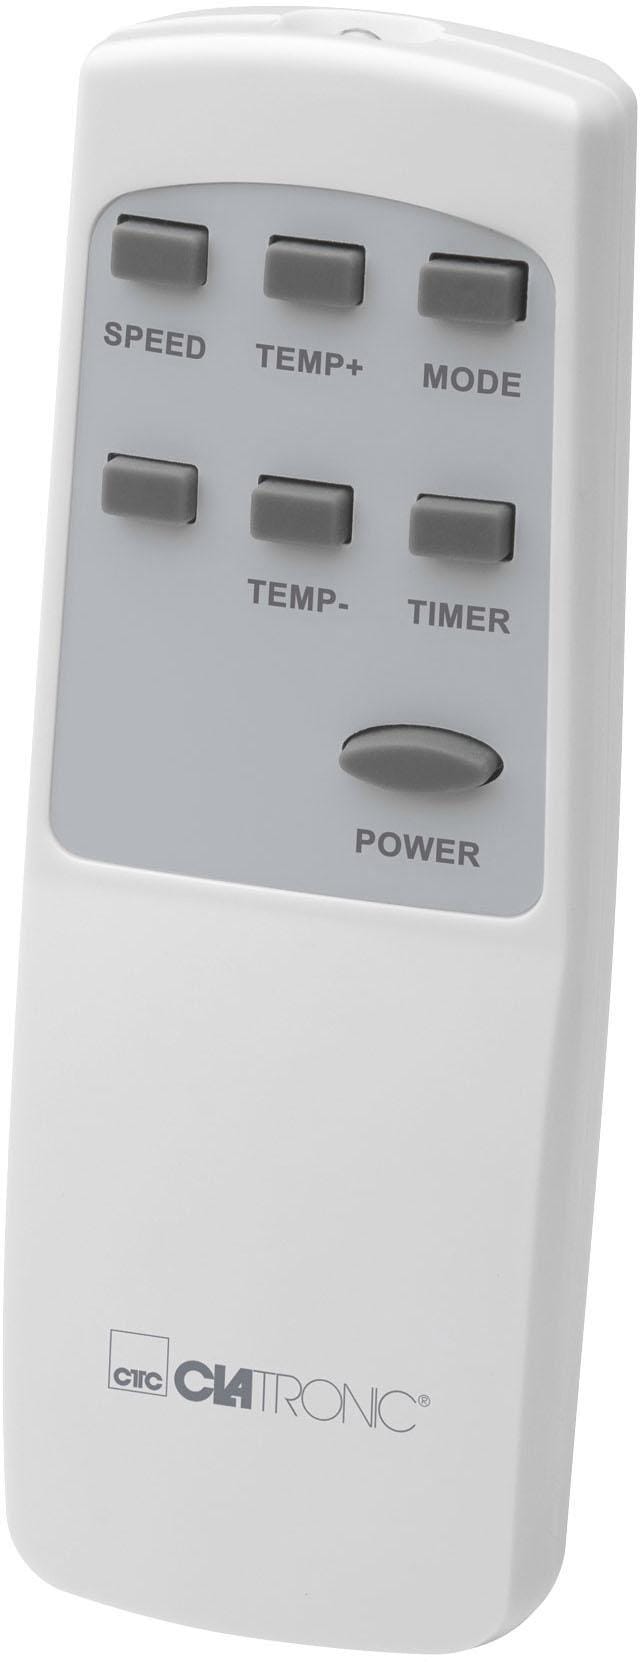 CLATRONIC Klimagerät »CL 3716«, 3 in 1 – Kühlen, Entfeuchten, Ventilieren, WiFi-Steuerung